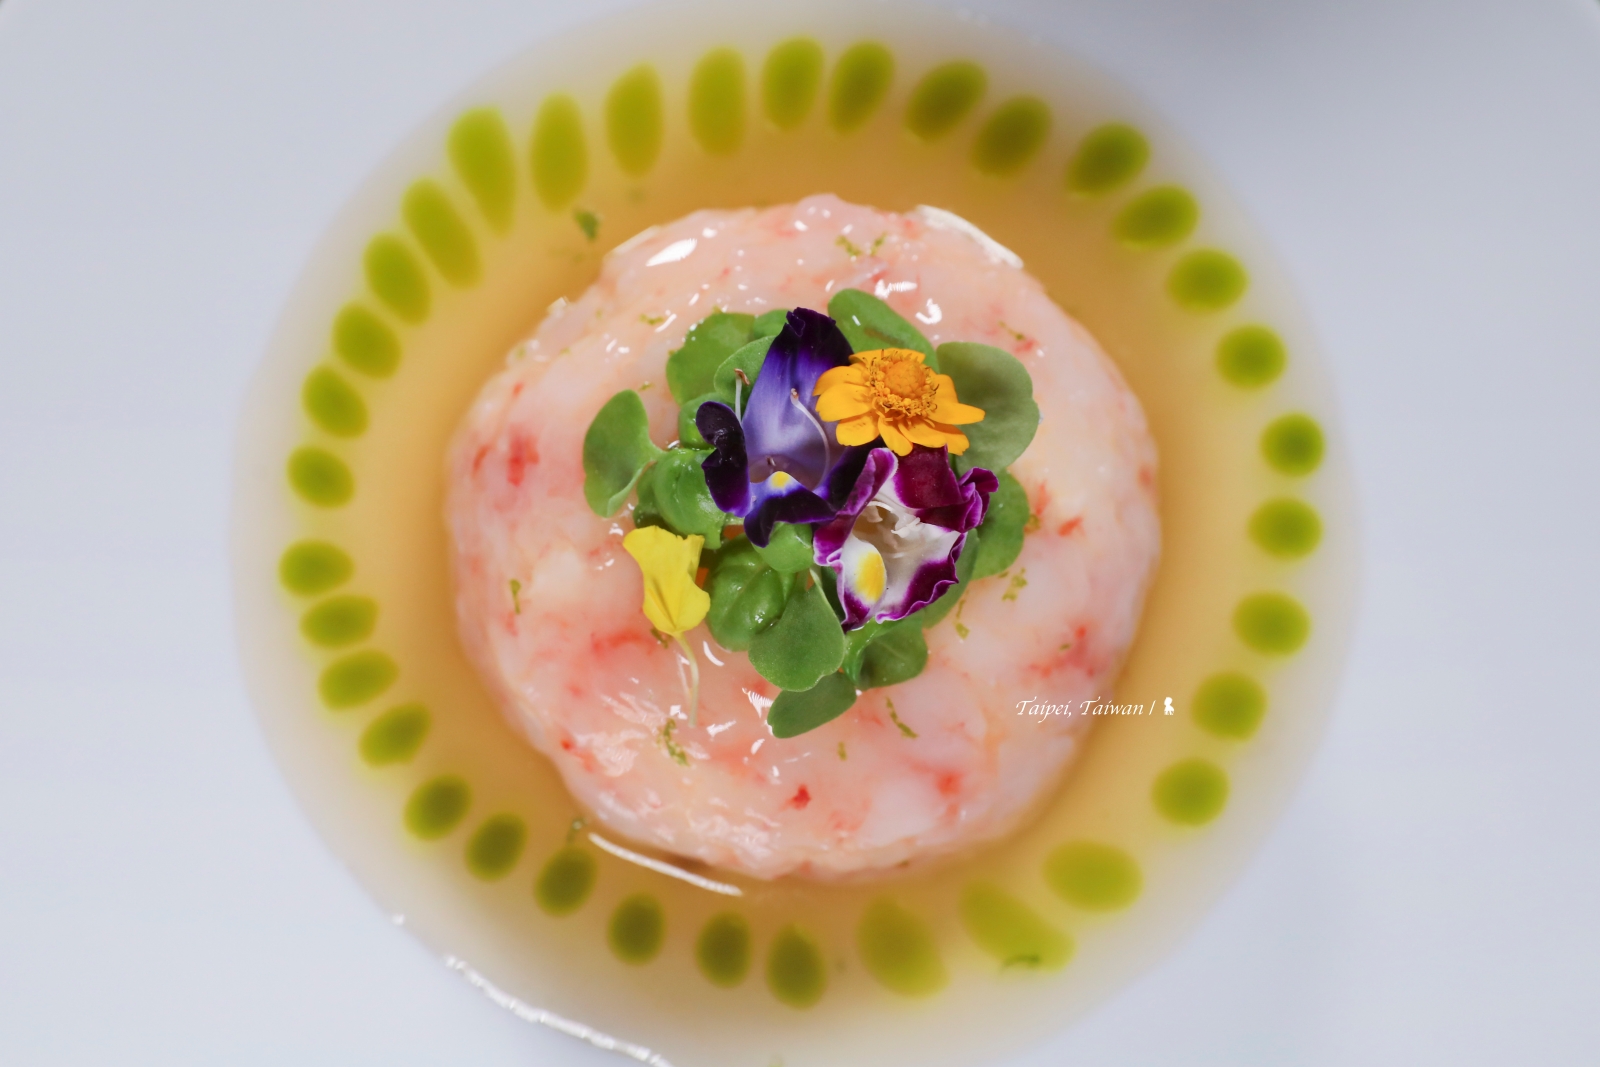 讓味蕾放飛>> CROM Taipei 以酸調味，推出夏季北義料理菜單抗暑開胃